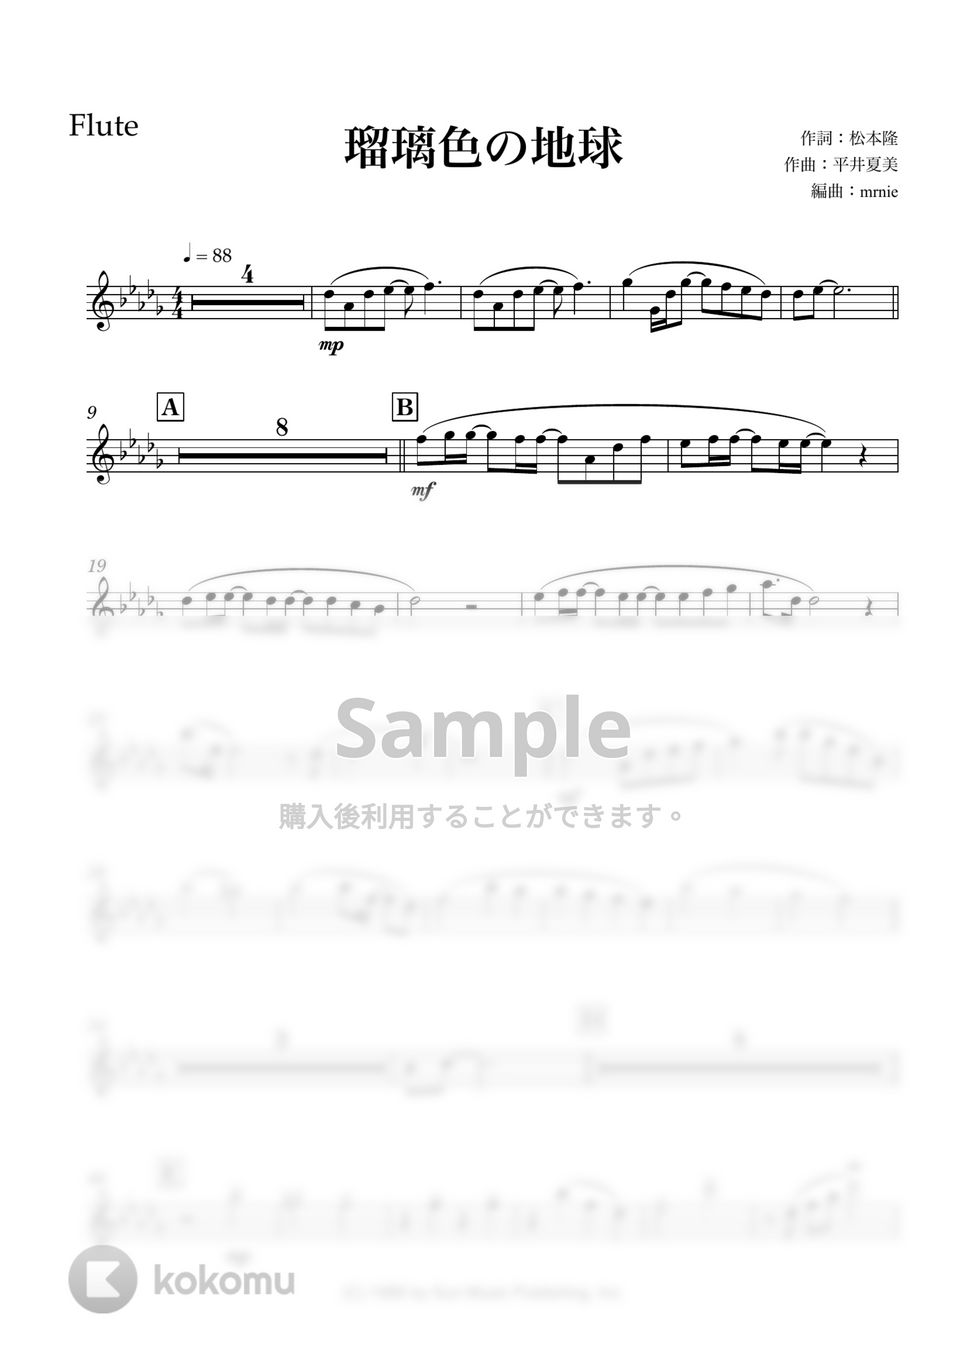 松田聖子 - 瑠璃色の地球 (木管五重奏) by マロニエミュージック